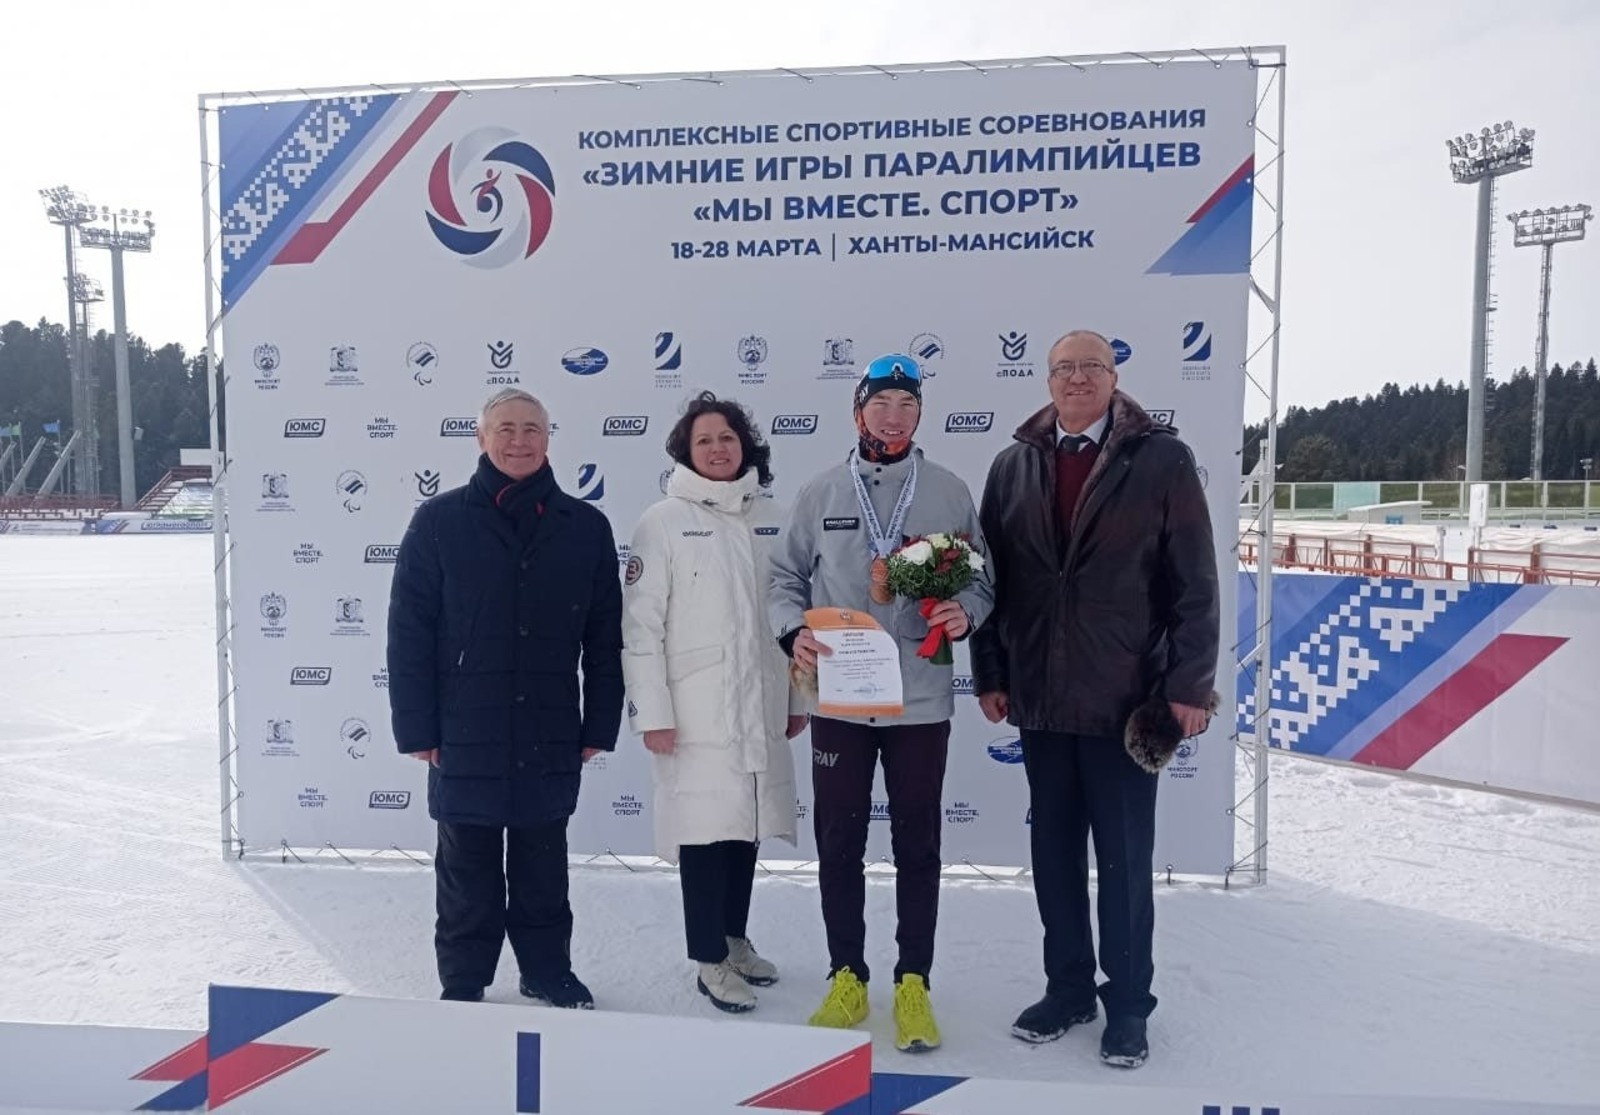 Лыжники из Башкирии завоевали первые награды Зимних Игр Паралимпийцев